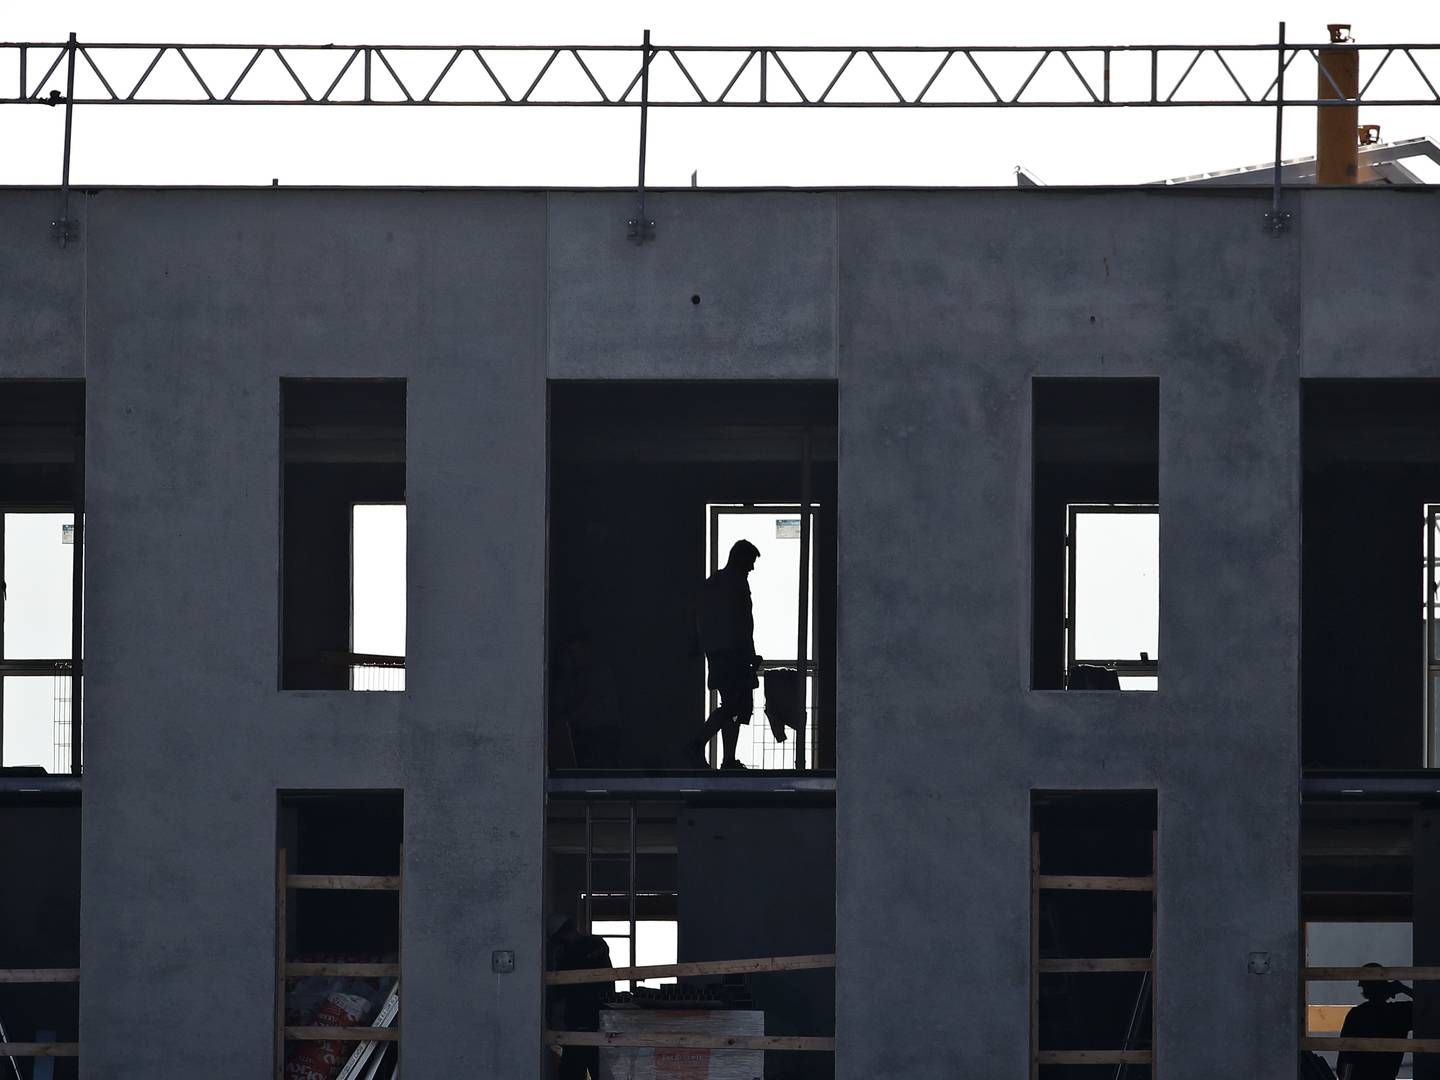 Byggeriet er en af de brancher, hvor risikoen for arbejdsskader er størst. | Foto: Jens Dresling/Ritzau Scanpix